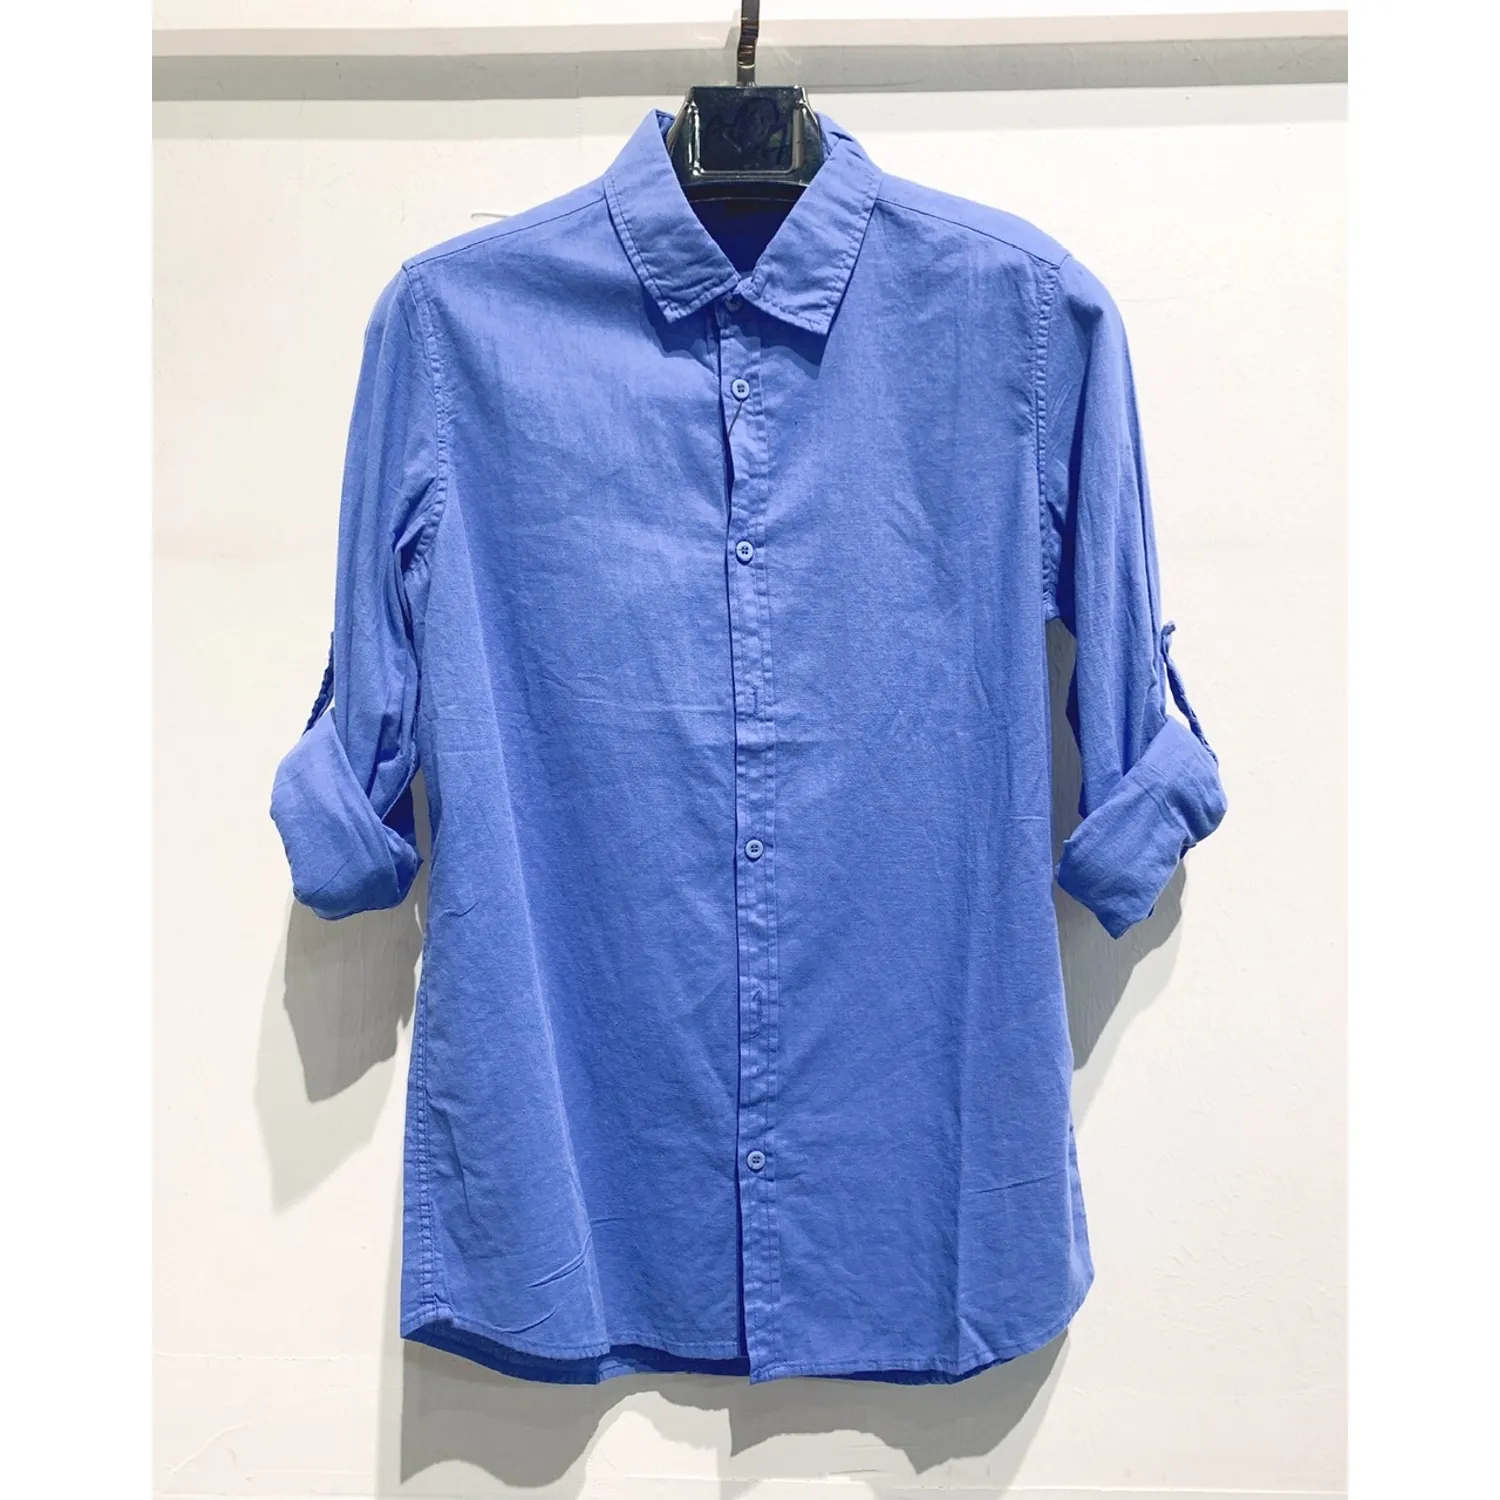 Ανδρικό μακρυμάνικο πουκάμισο λινό μπλε Ι